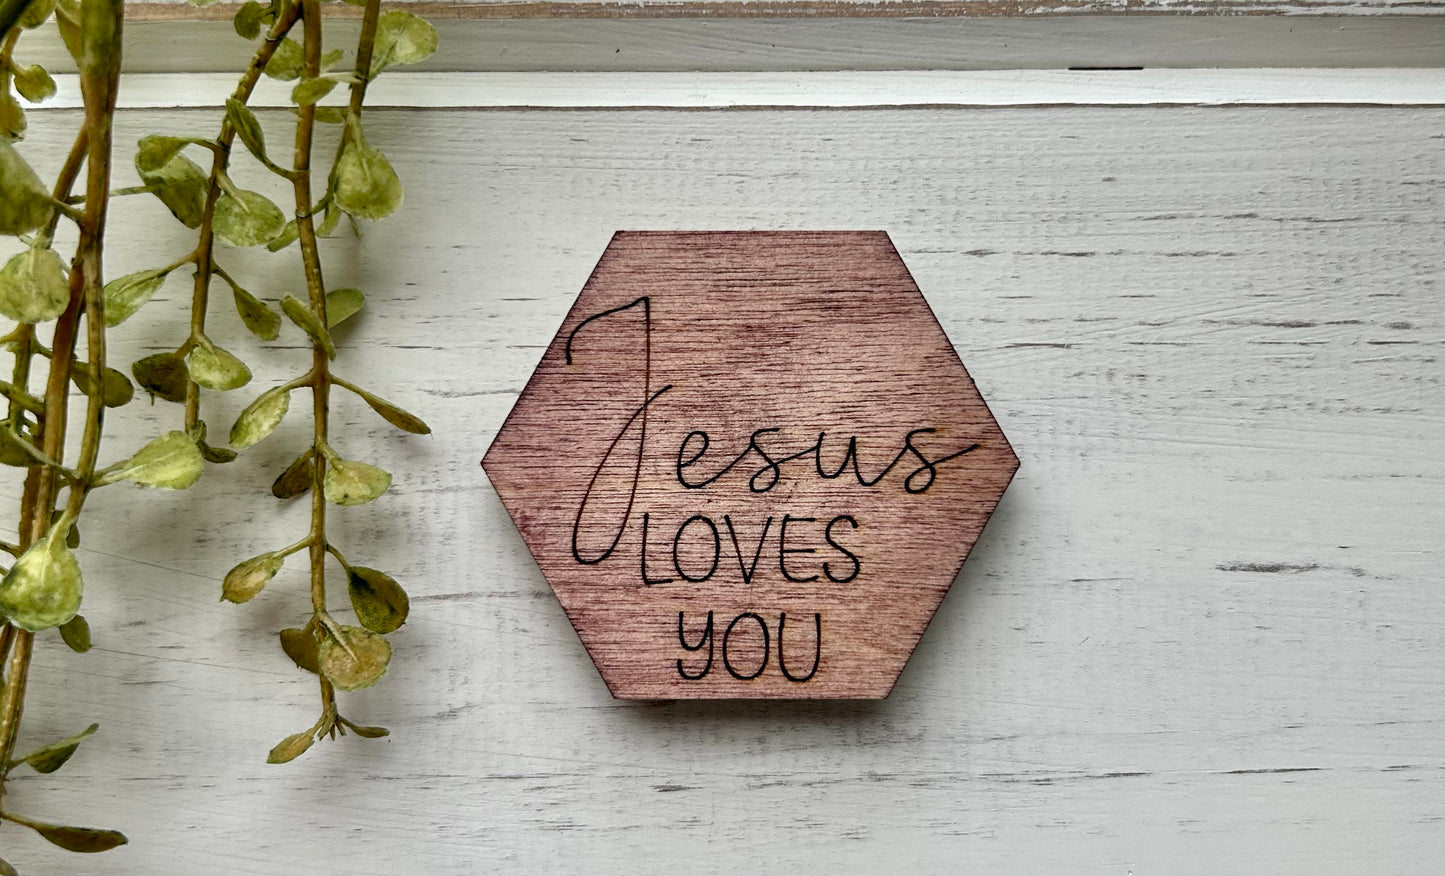 Jesus Loves You Wood Magnet